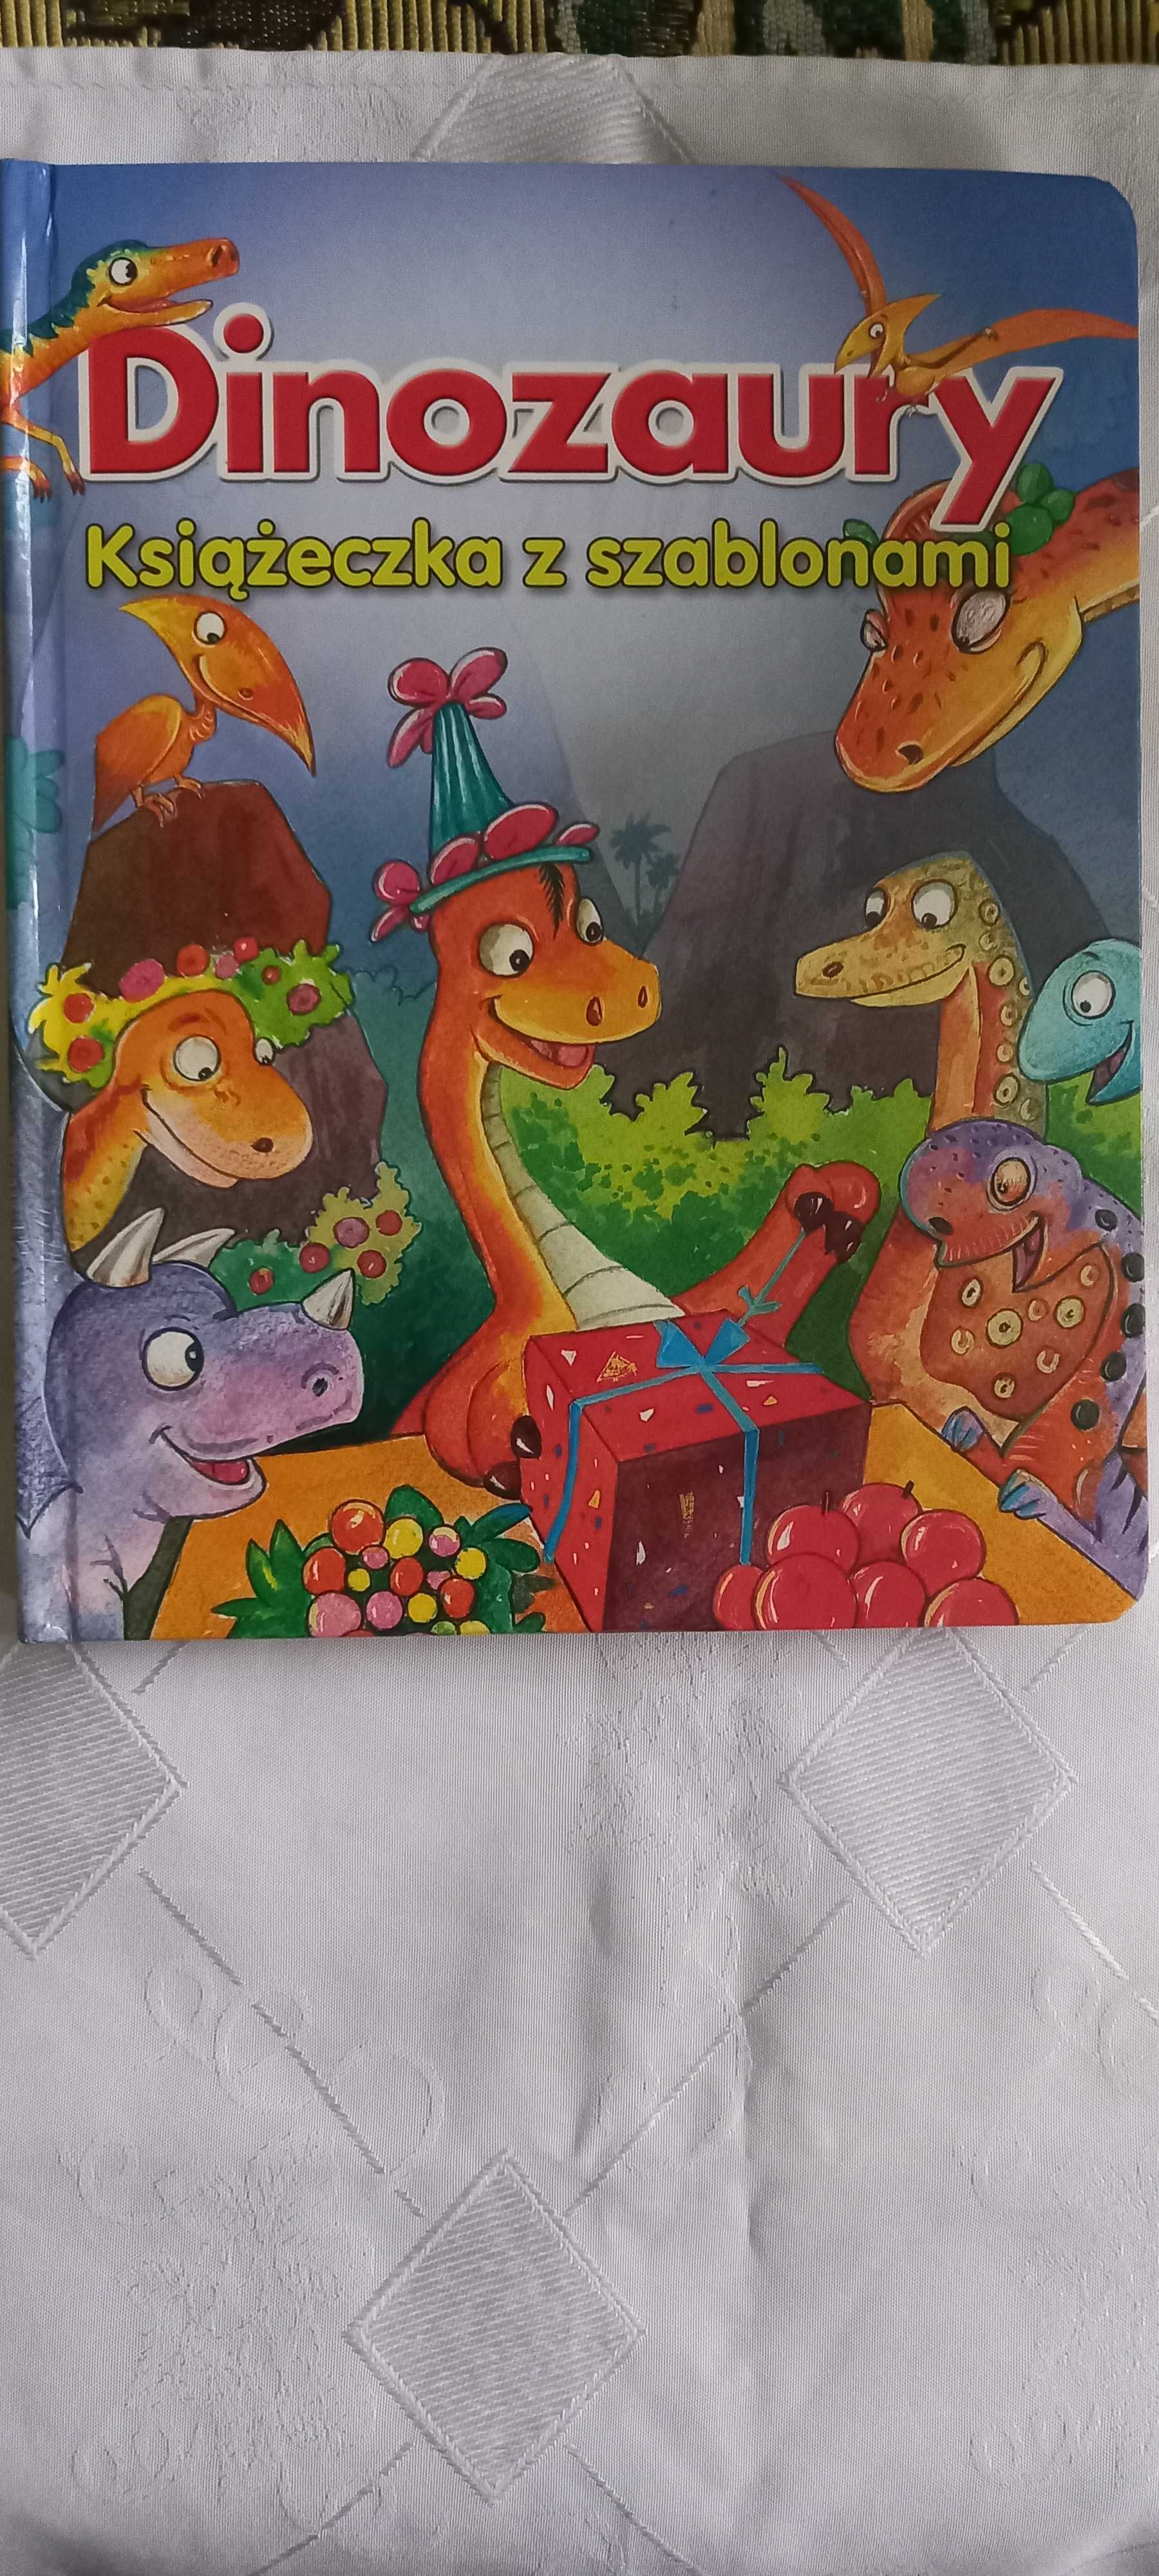 książka dinozaury dla dzieci z Szablonami  sztywna okładka i kartki